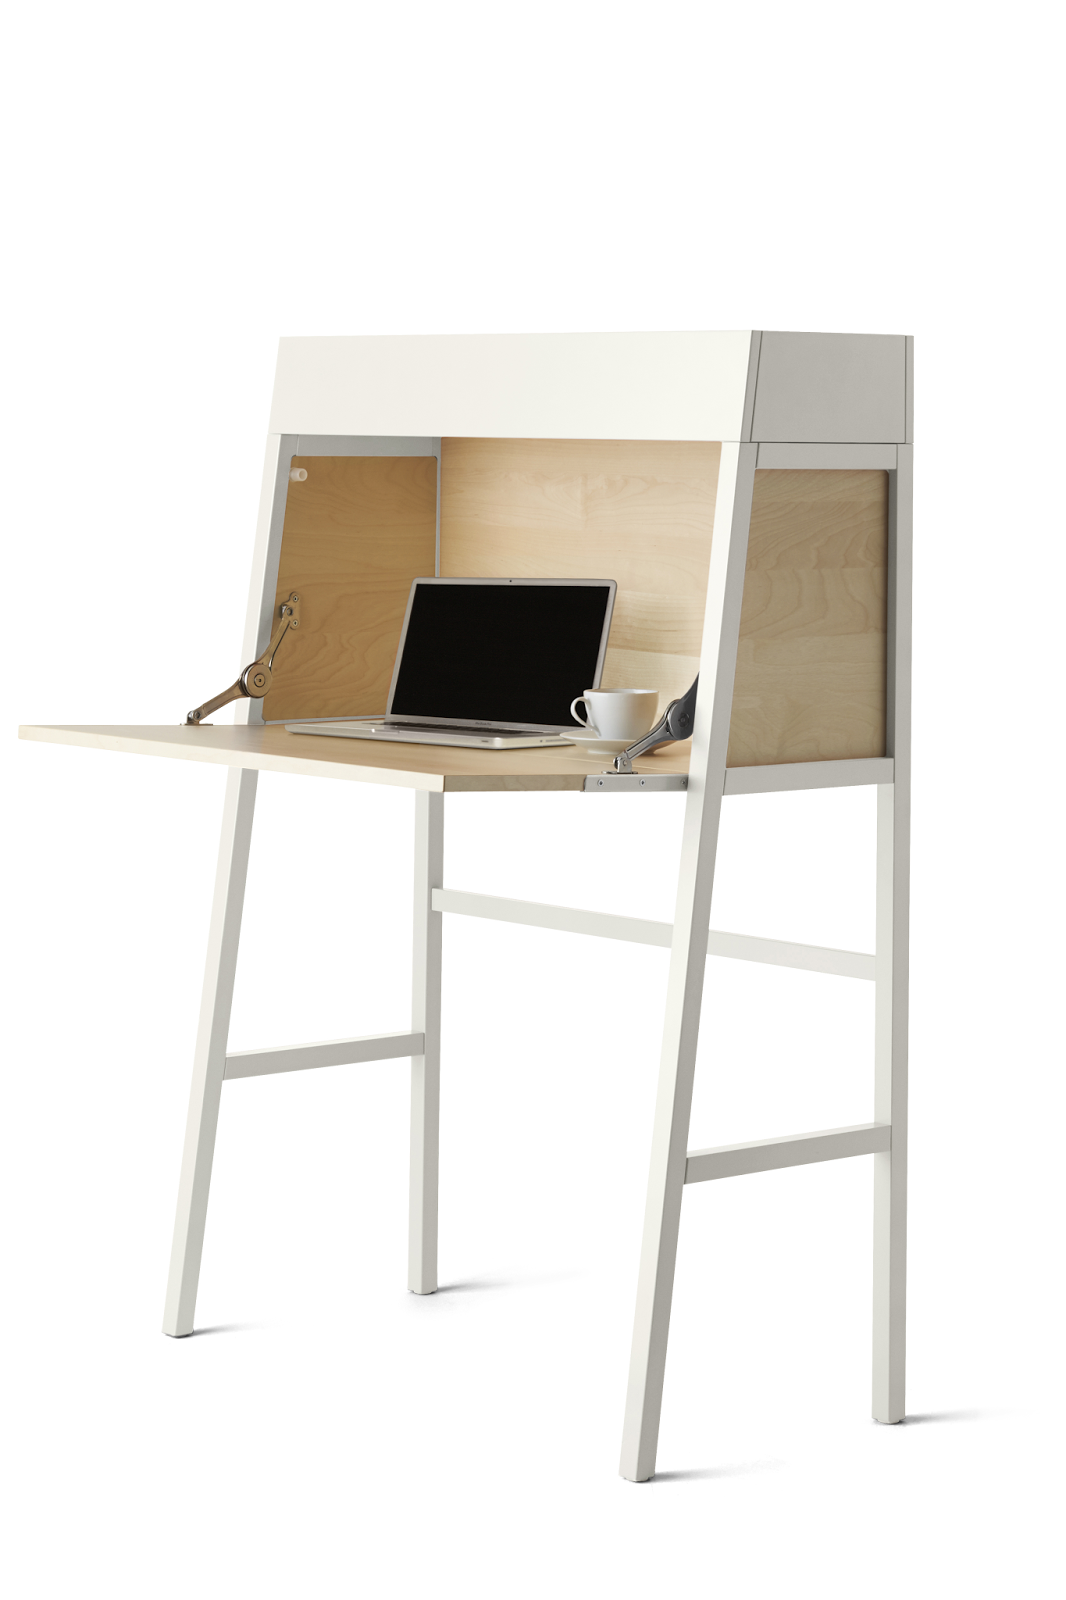 Secrétaire Ikea Ps Un Bureau Design Qui Ne Prend Pas